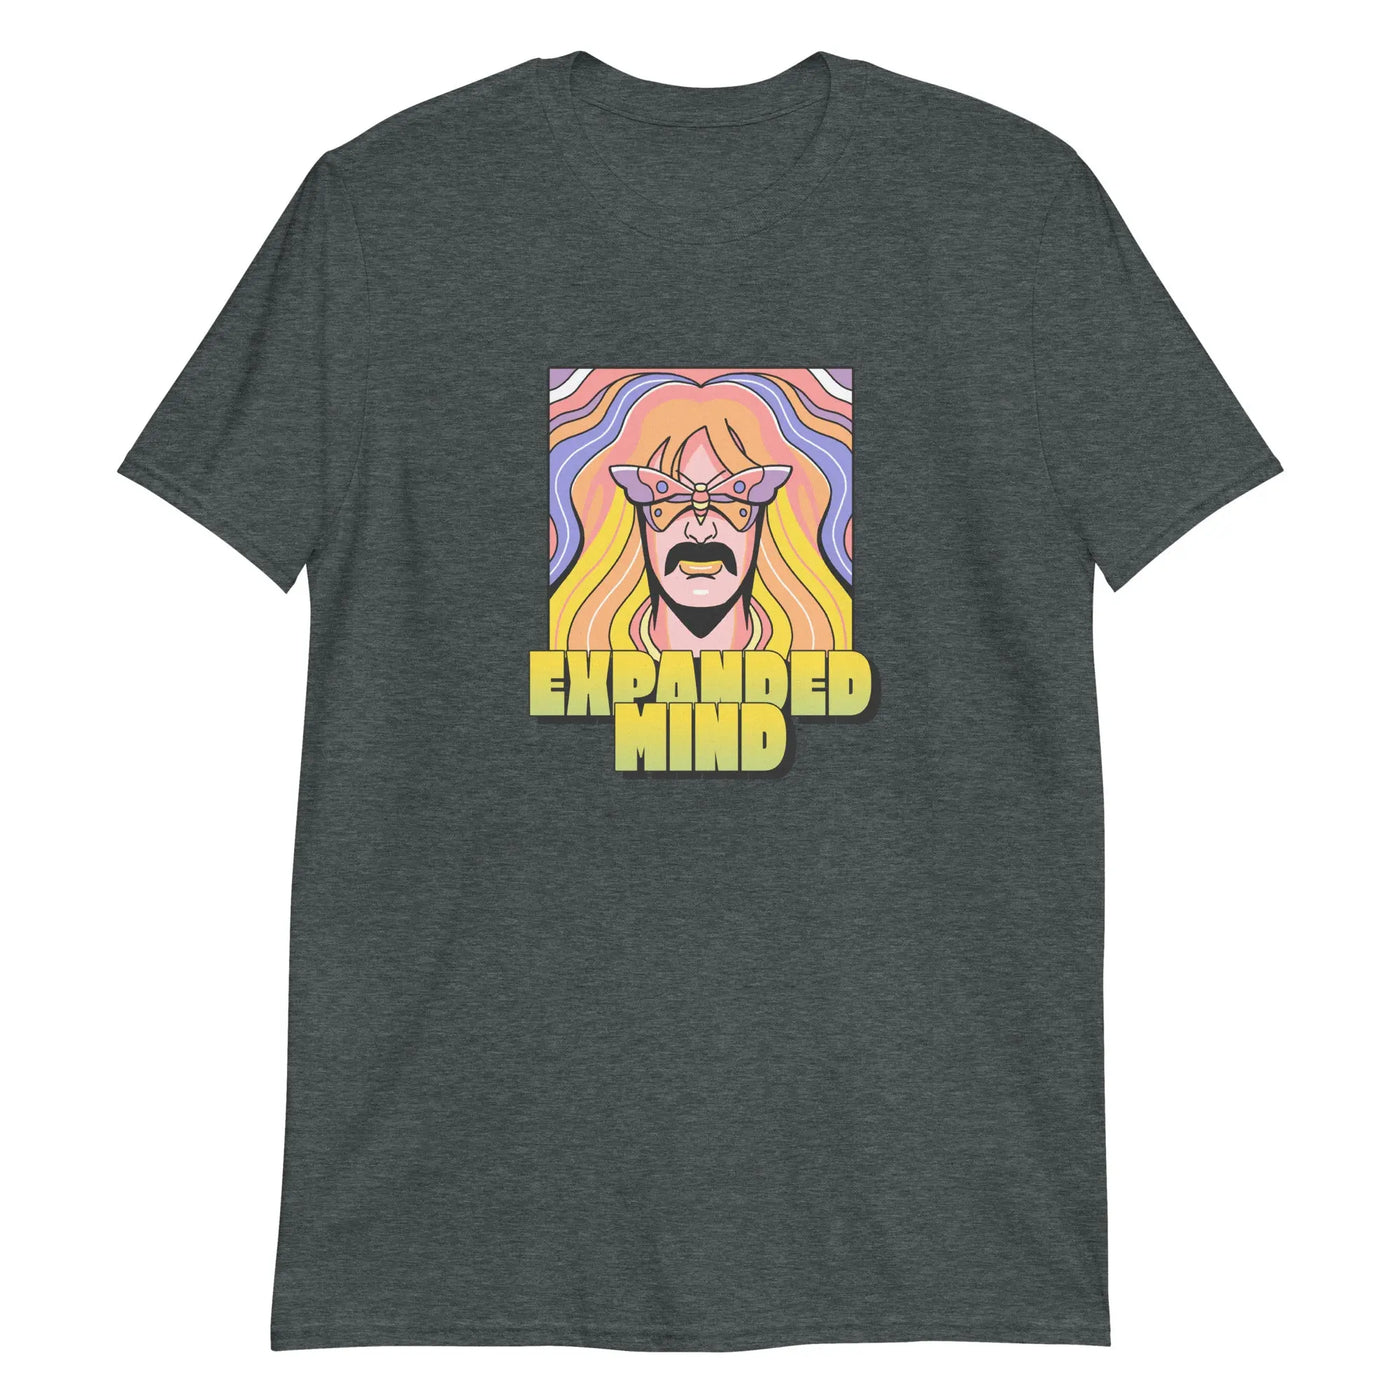 Expanded Mind Unisex T-Shirt CRZYTEE